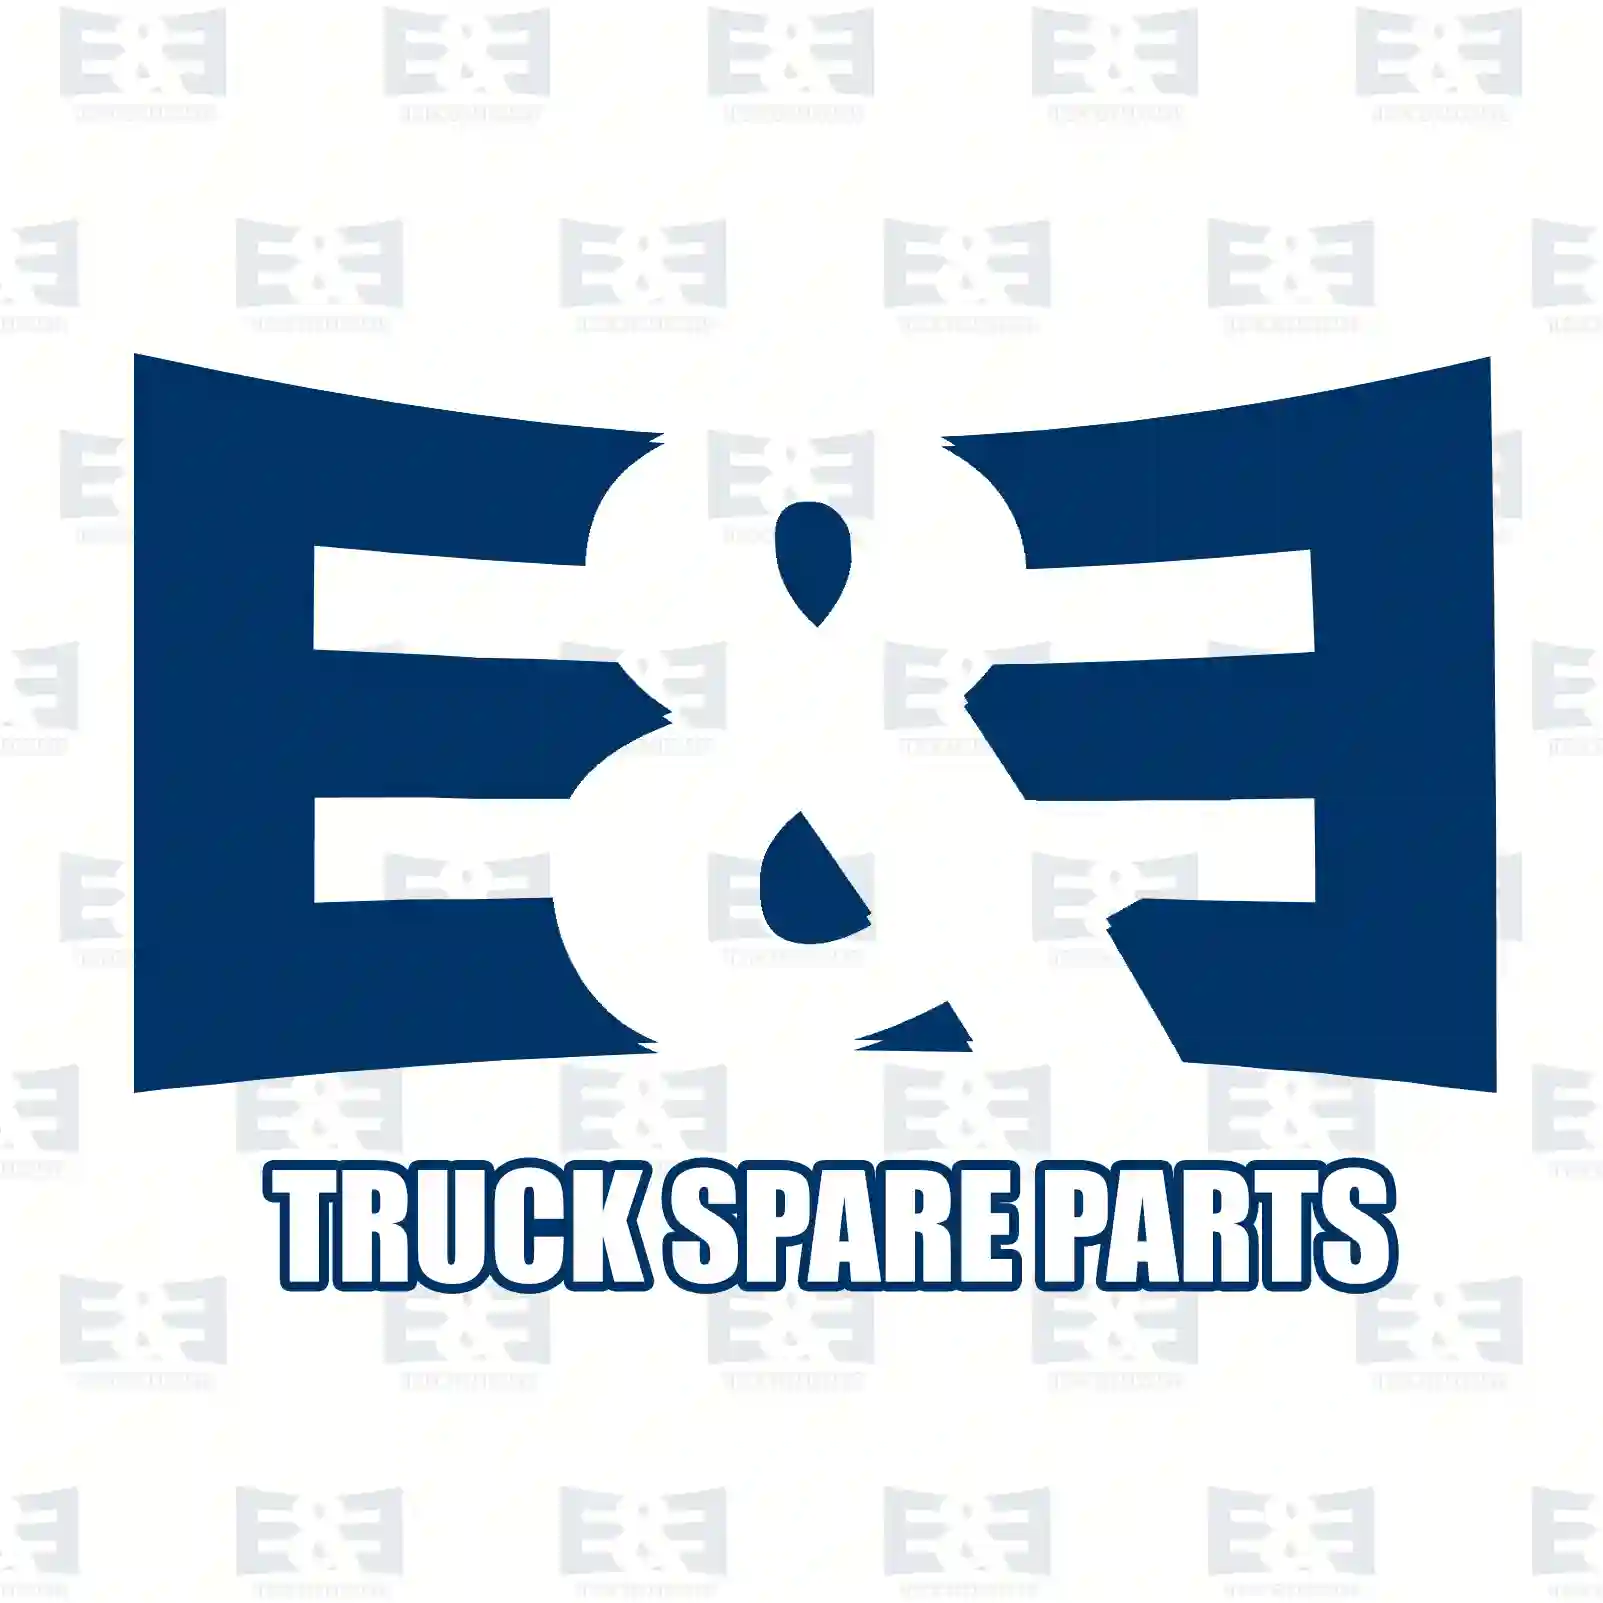 Shock absorber, 2E2283191, 0063267300, 9743260100, , , , ||  2E2283191 E&E Truck Spare Parts | Truck Spare Parts, Auotomotive Spare Parts Shock absorber, 2E2283191, 0063267300, 9743260100, , , , ||  2E2283191 E&E Truck Spare Parts | Truck Spare Parts, Auotomotive Spare Parts